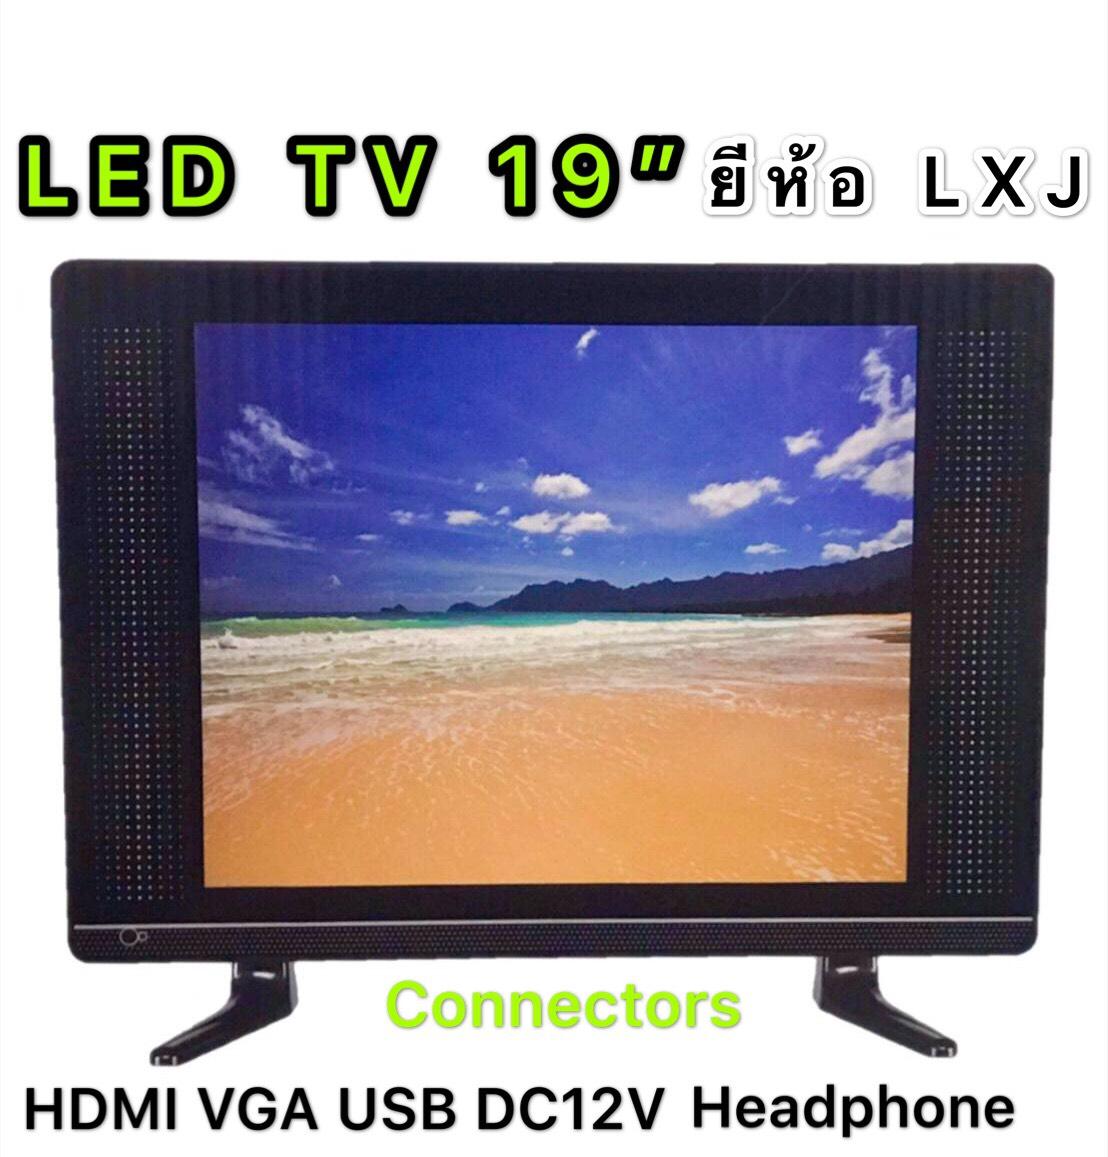 LXJ LED TV 19 นิ้ว (แอลอีดีทีวี 19 นิ้ว) ขายดี